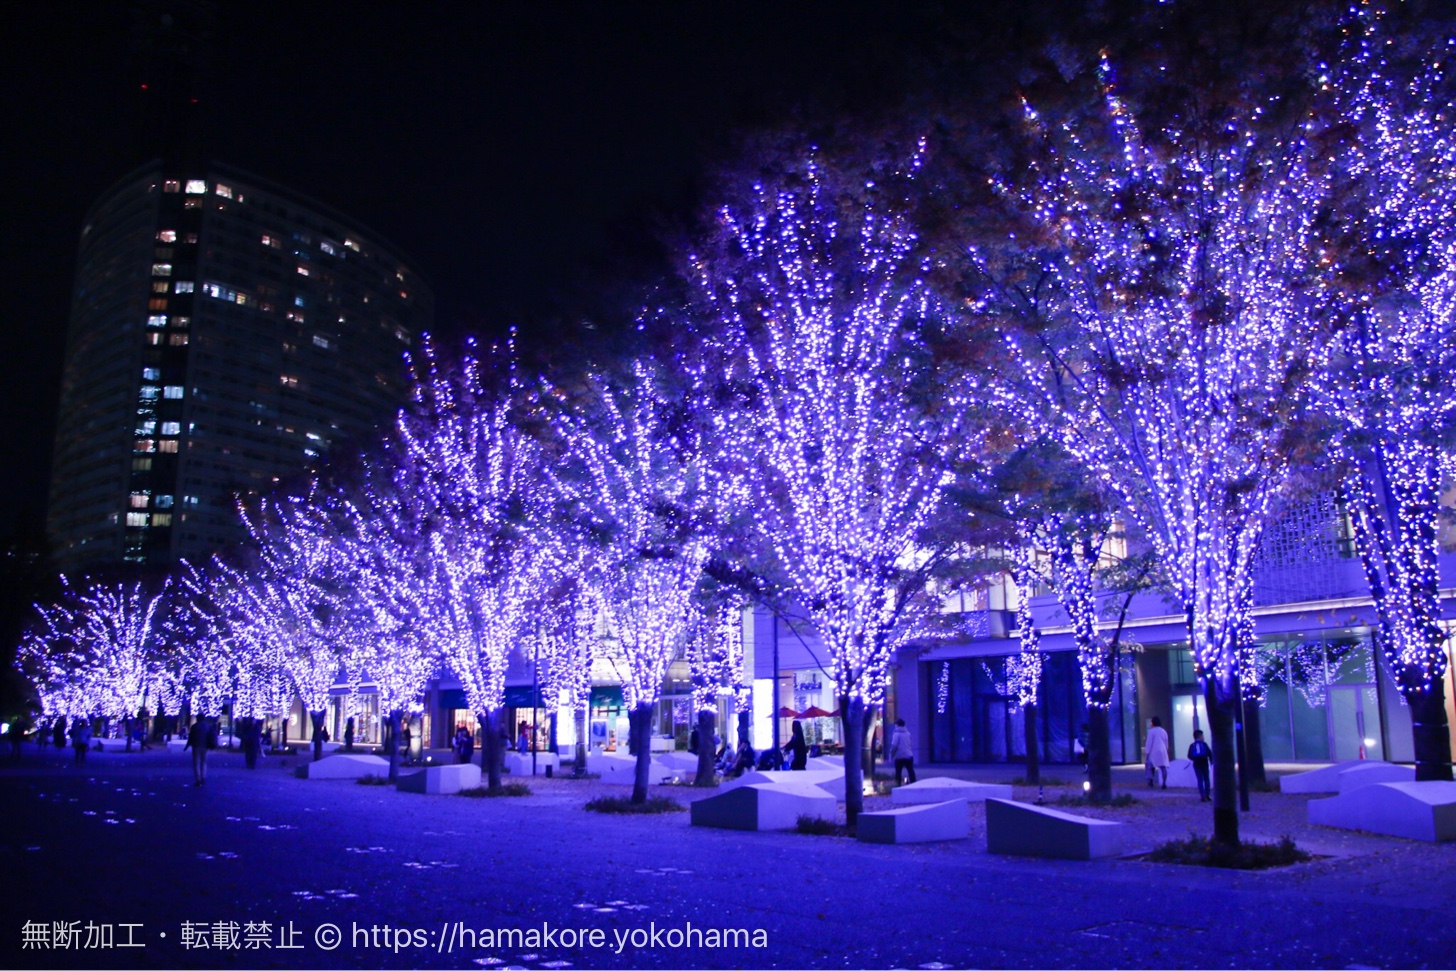 17年 グランモール公園のクリスマスイルミネーションが規模拡大でケヤキ並木の美しい光景が広がる はまこれ横浜